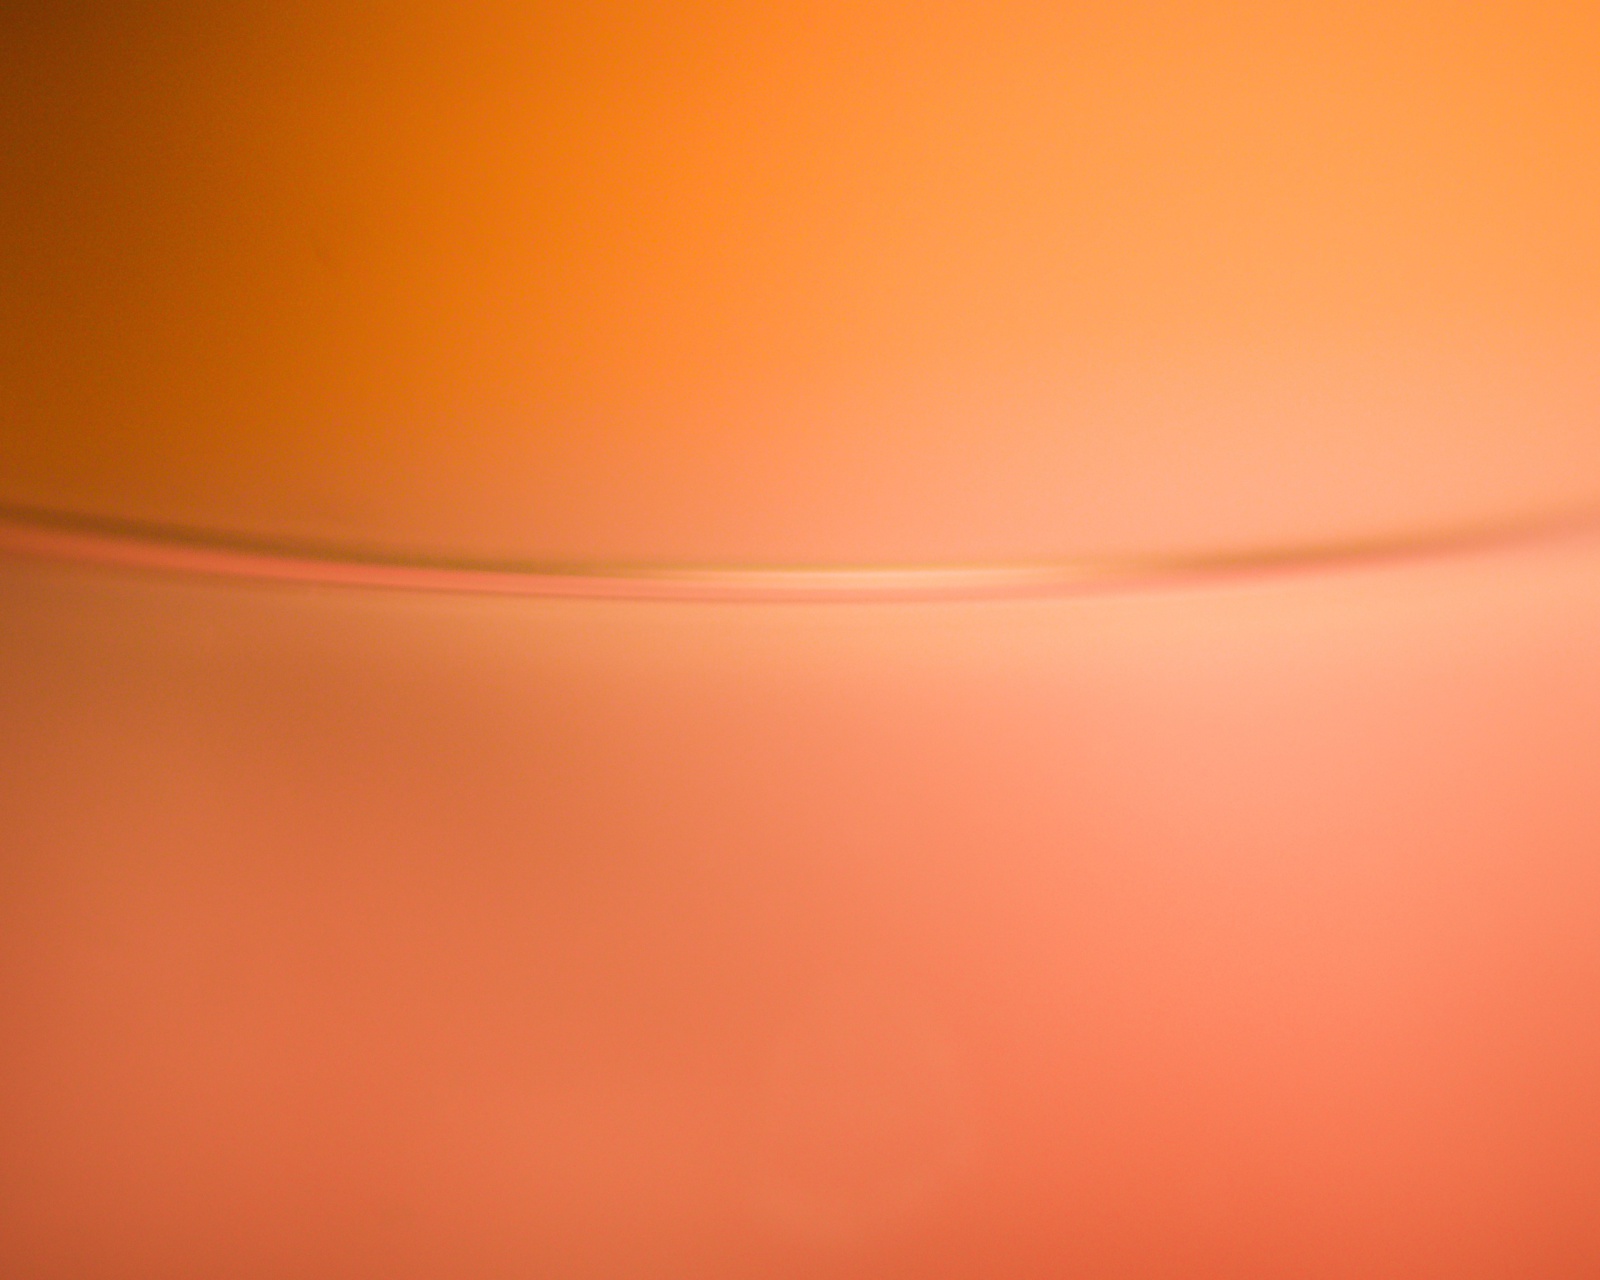 Das Bokeh Glass Orange Texture Wallpaper 1600x1280